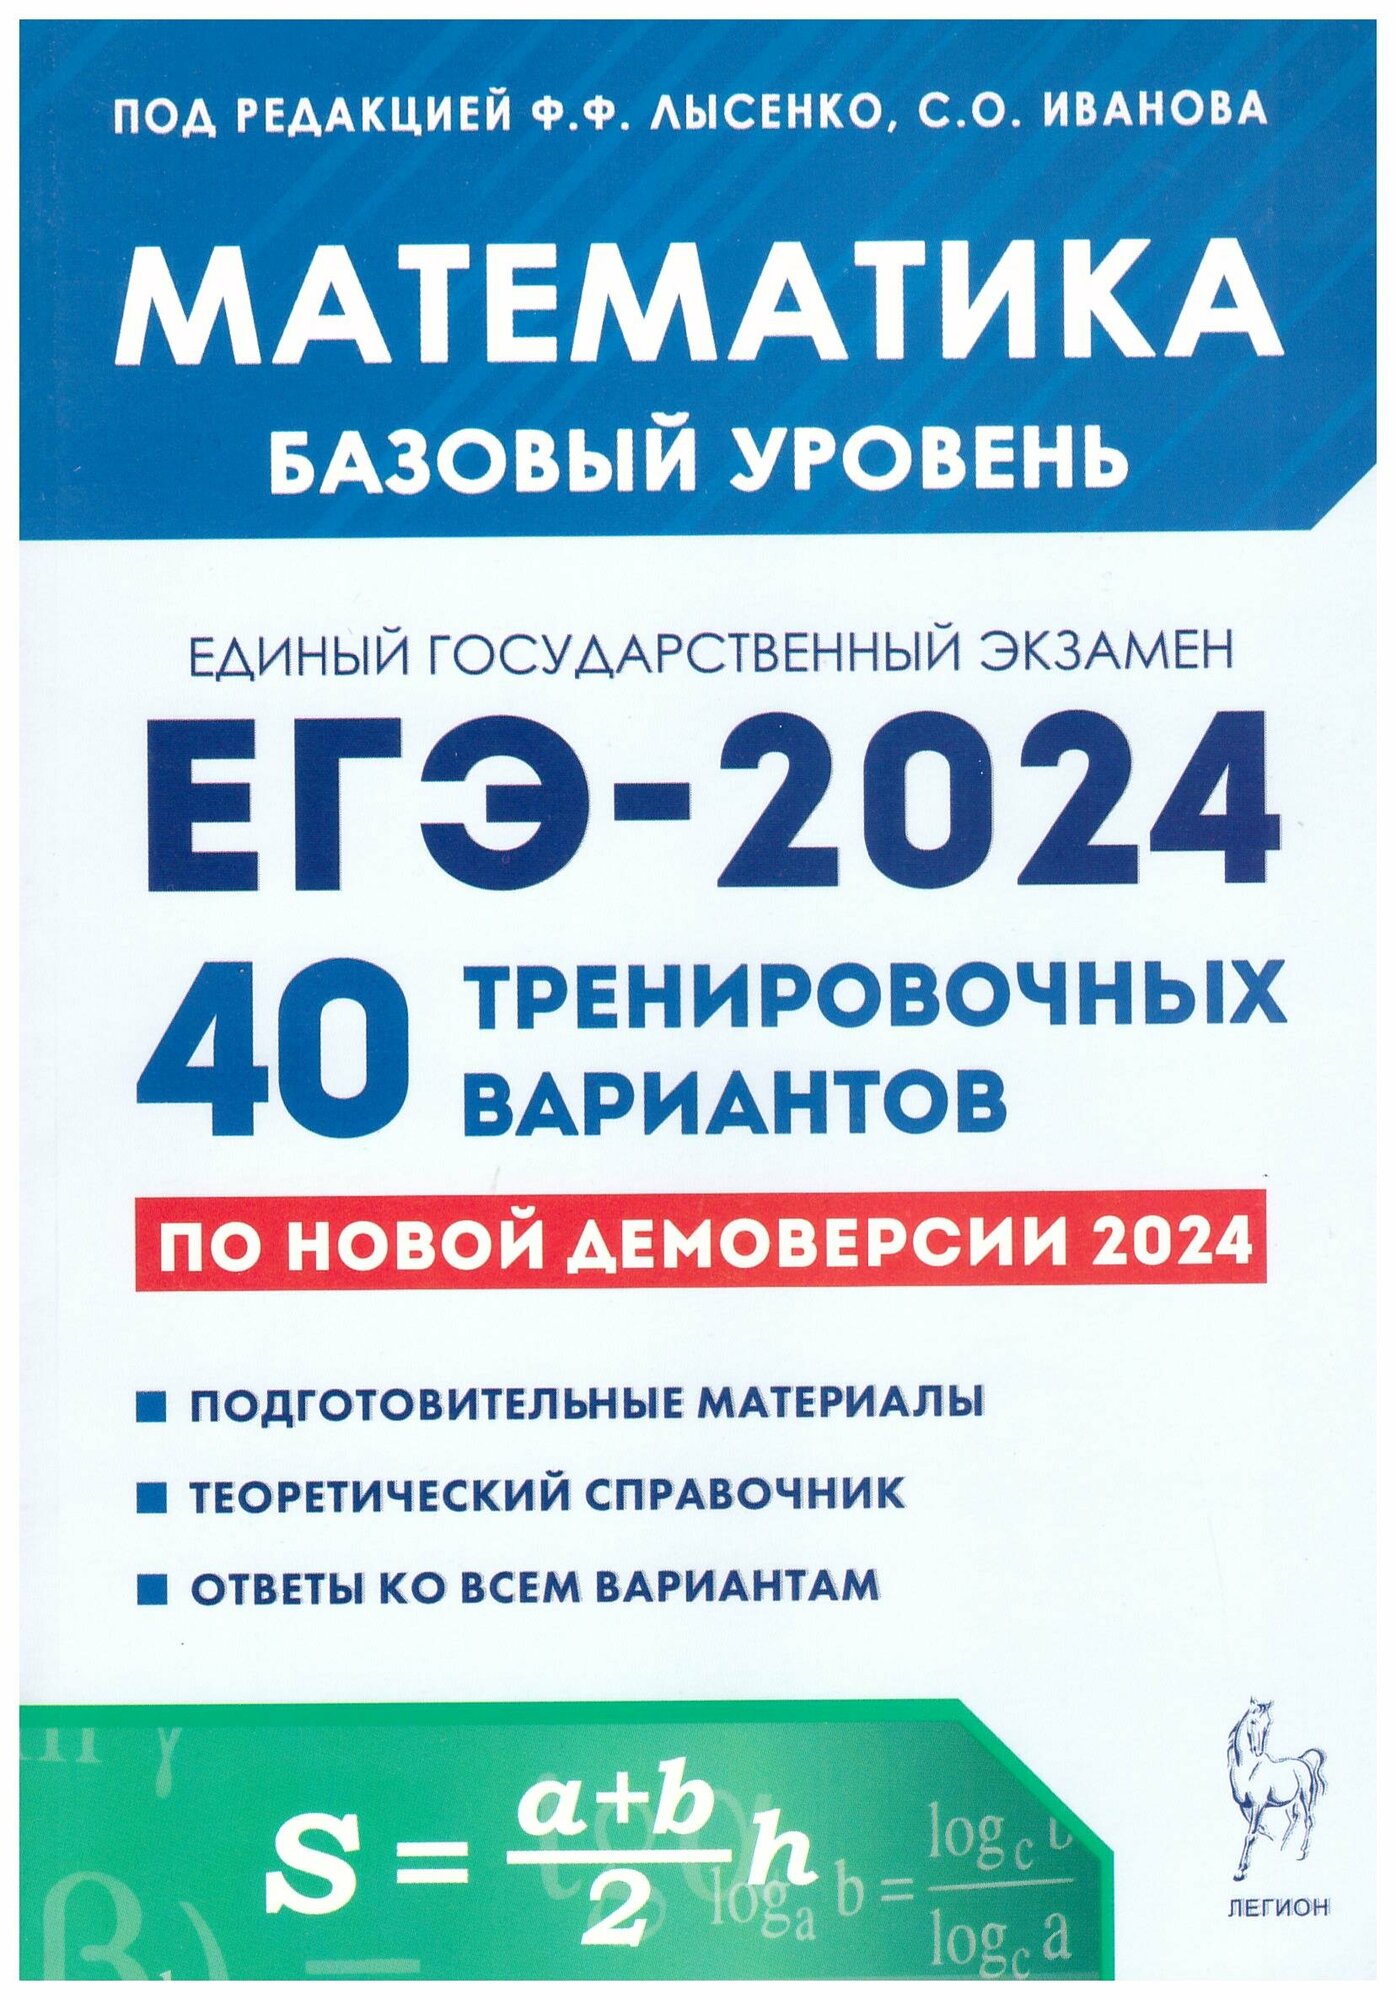 Иванов, Лысенко, Кулабухов: ЕГЭ-2024. Математика. Базовый уровень. 40 тренировочных вариантов по демоверсии 2024 года